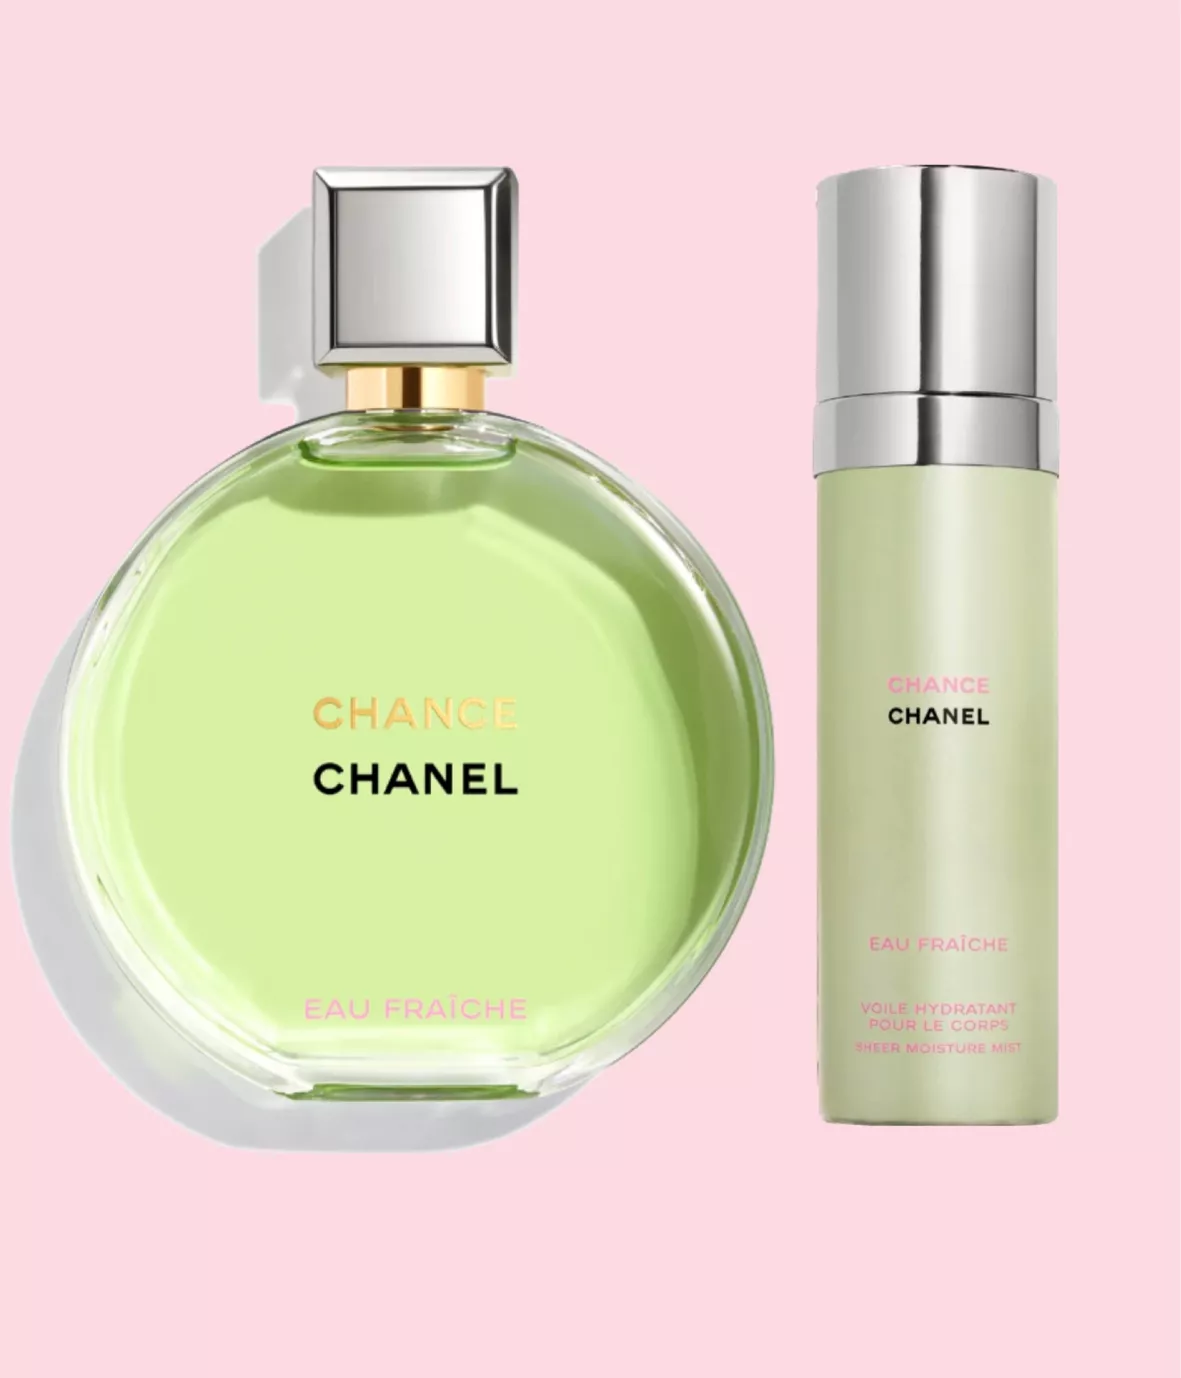 CHANEL CHANCE Eau Fraiche Perfume